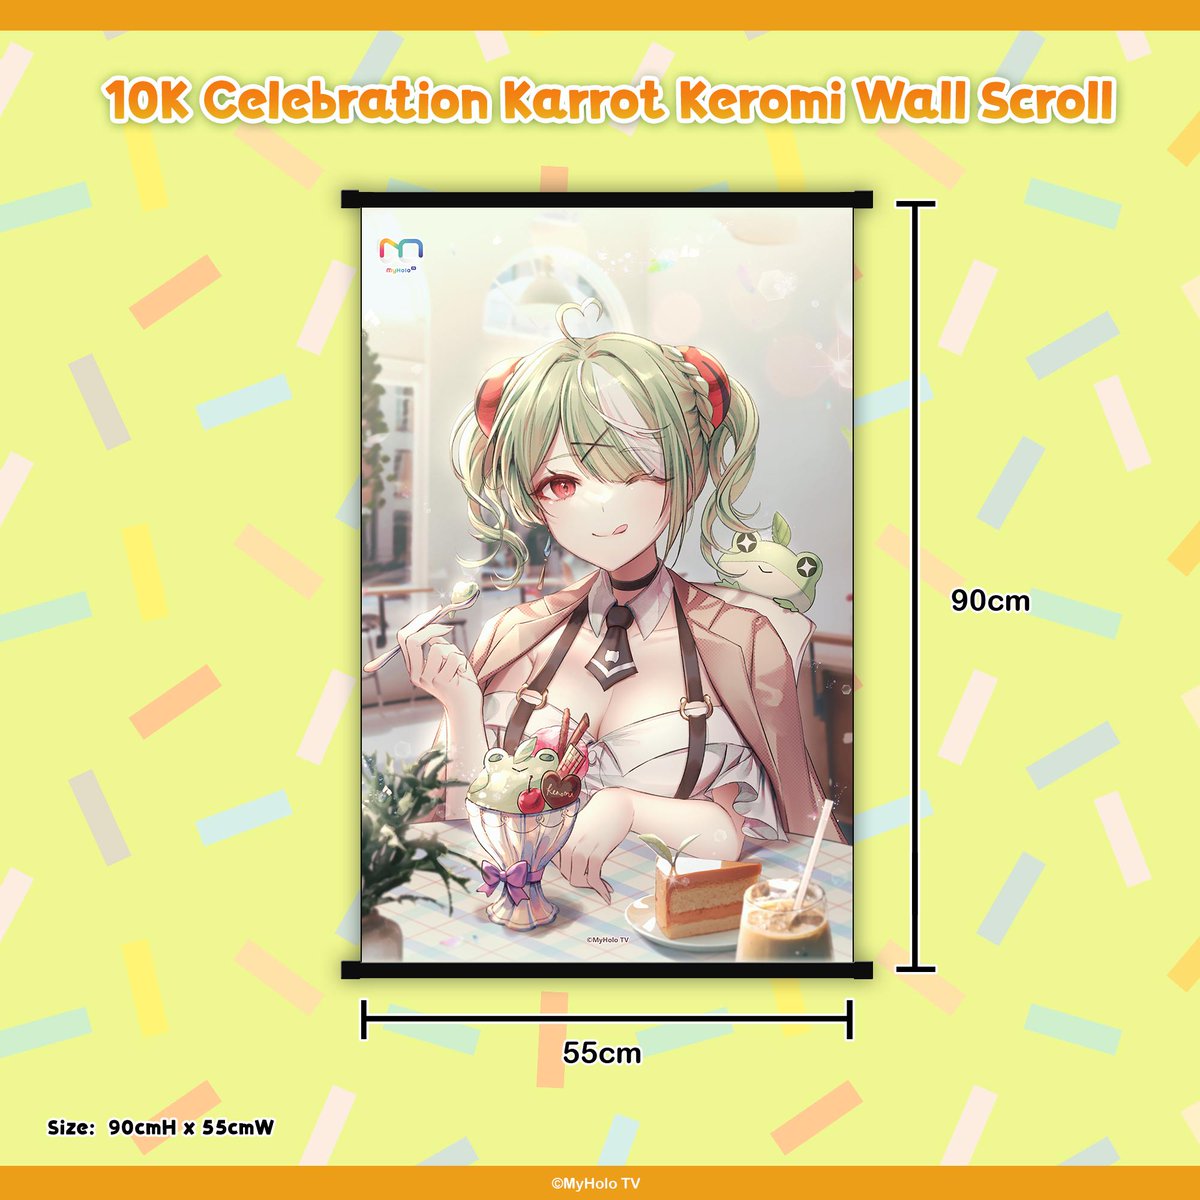 Karrot Keromi's 10K Achievement Wall Scroll Merchandise